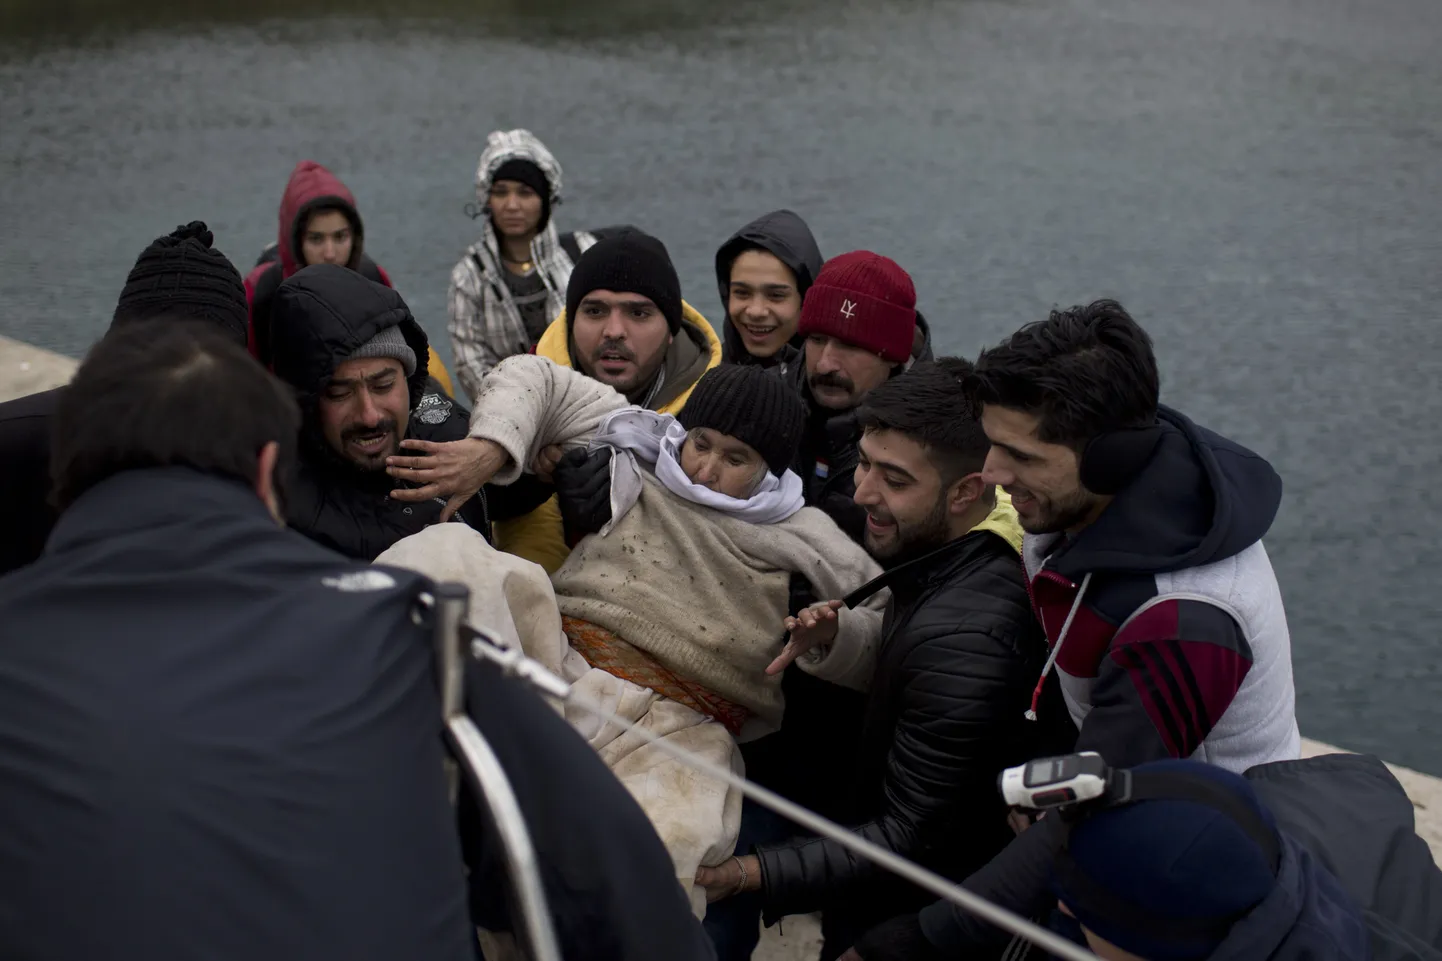 Põgenikud Kreekas